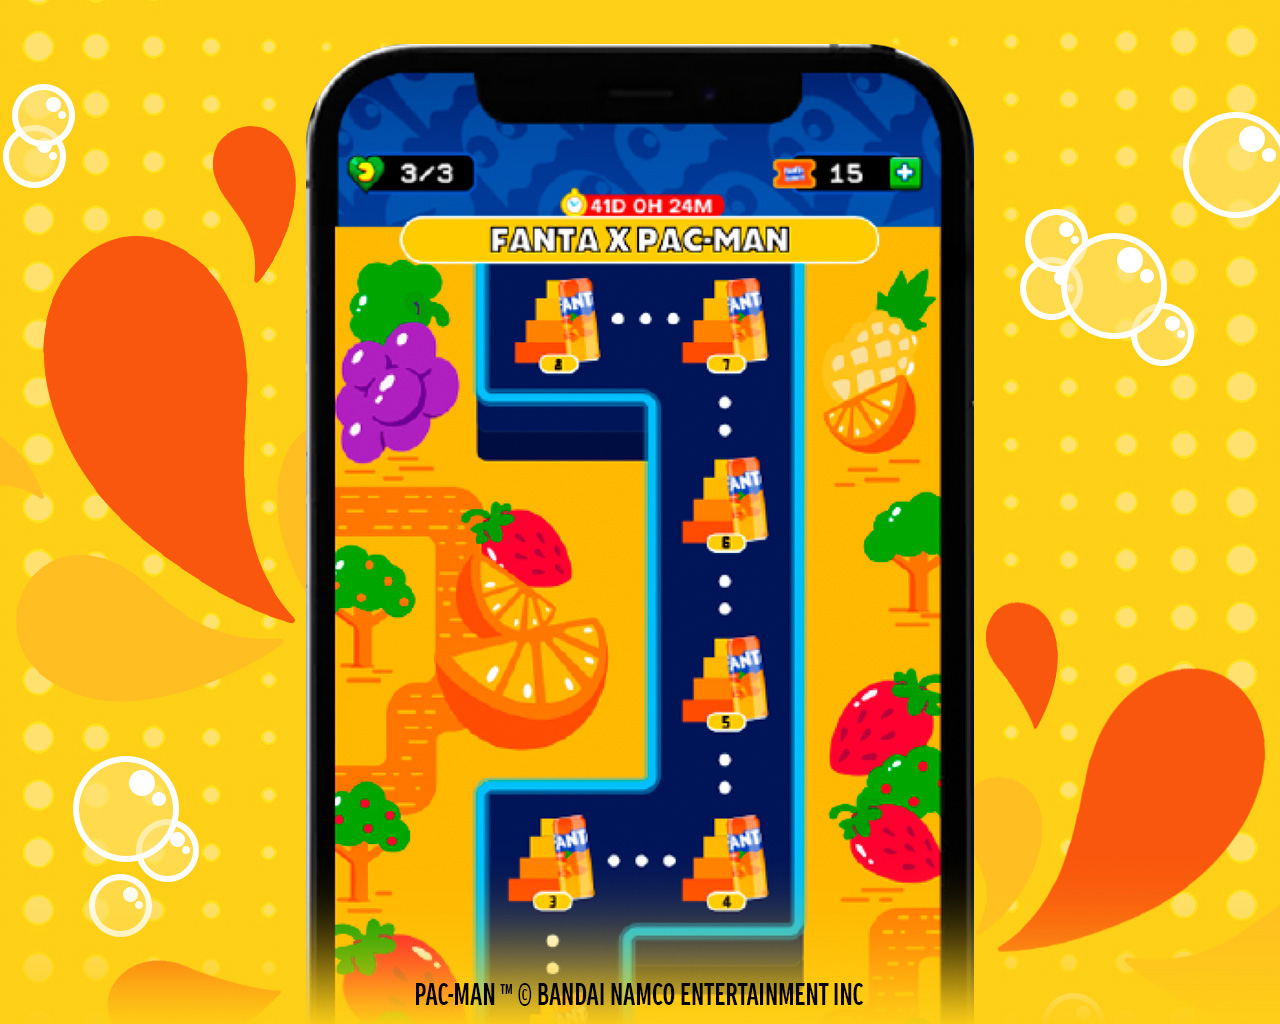 : Interfaz del juego para celulares Android y IPhone de Fanta Pac-Man que muestra un nivel del laberinto con frutas y los fantasmas de colores. 